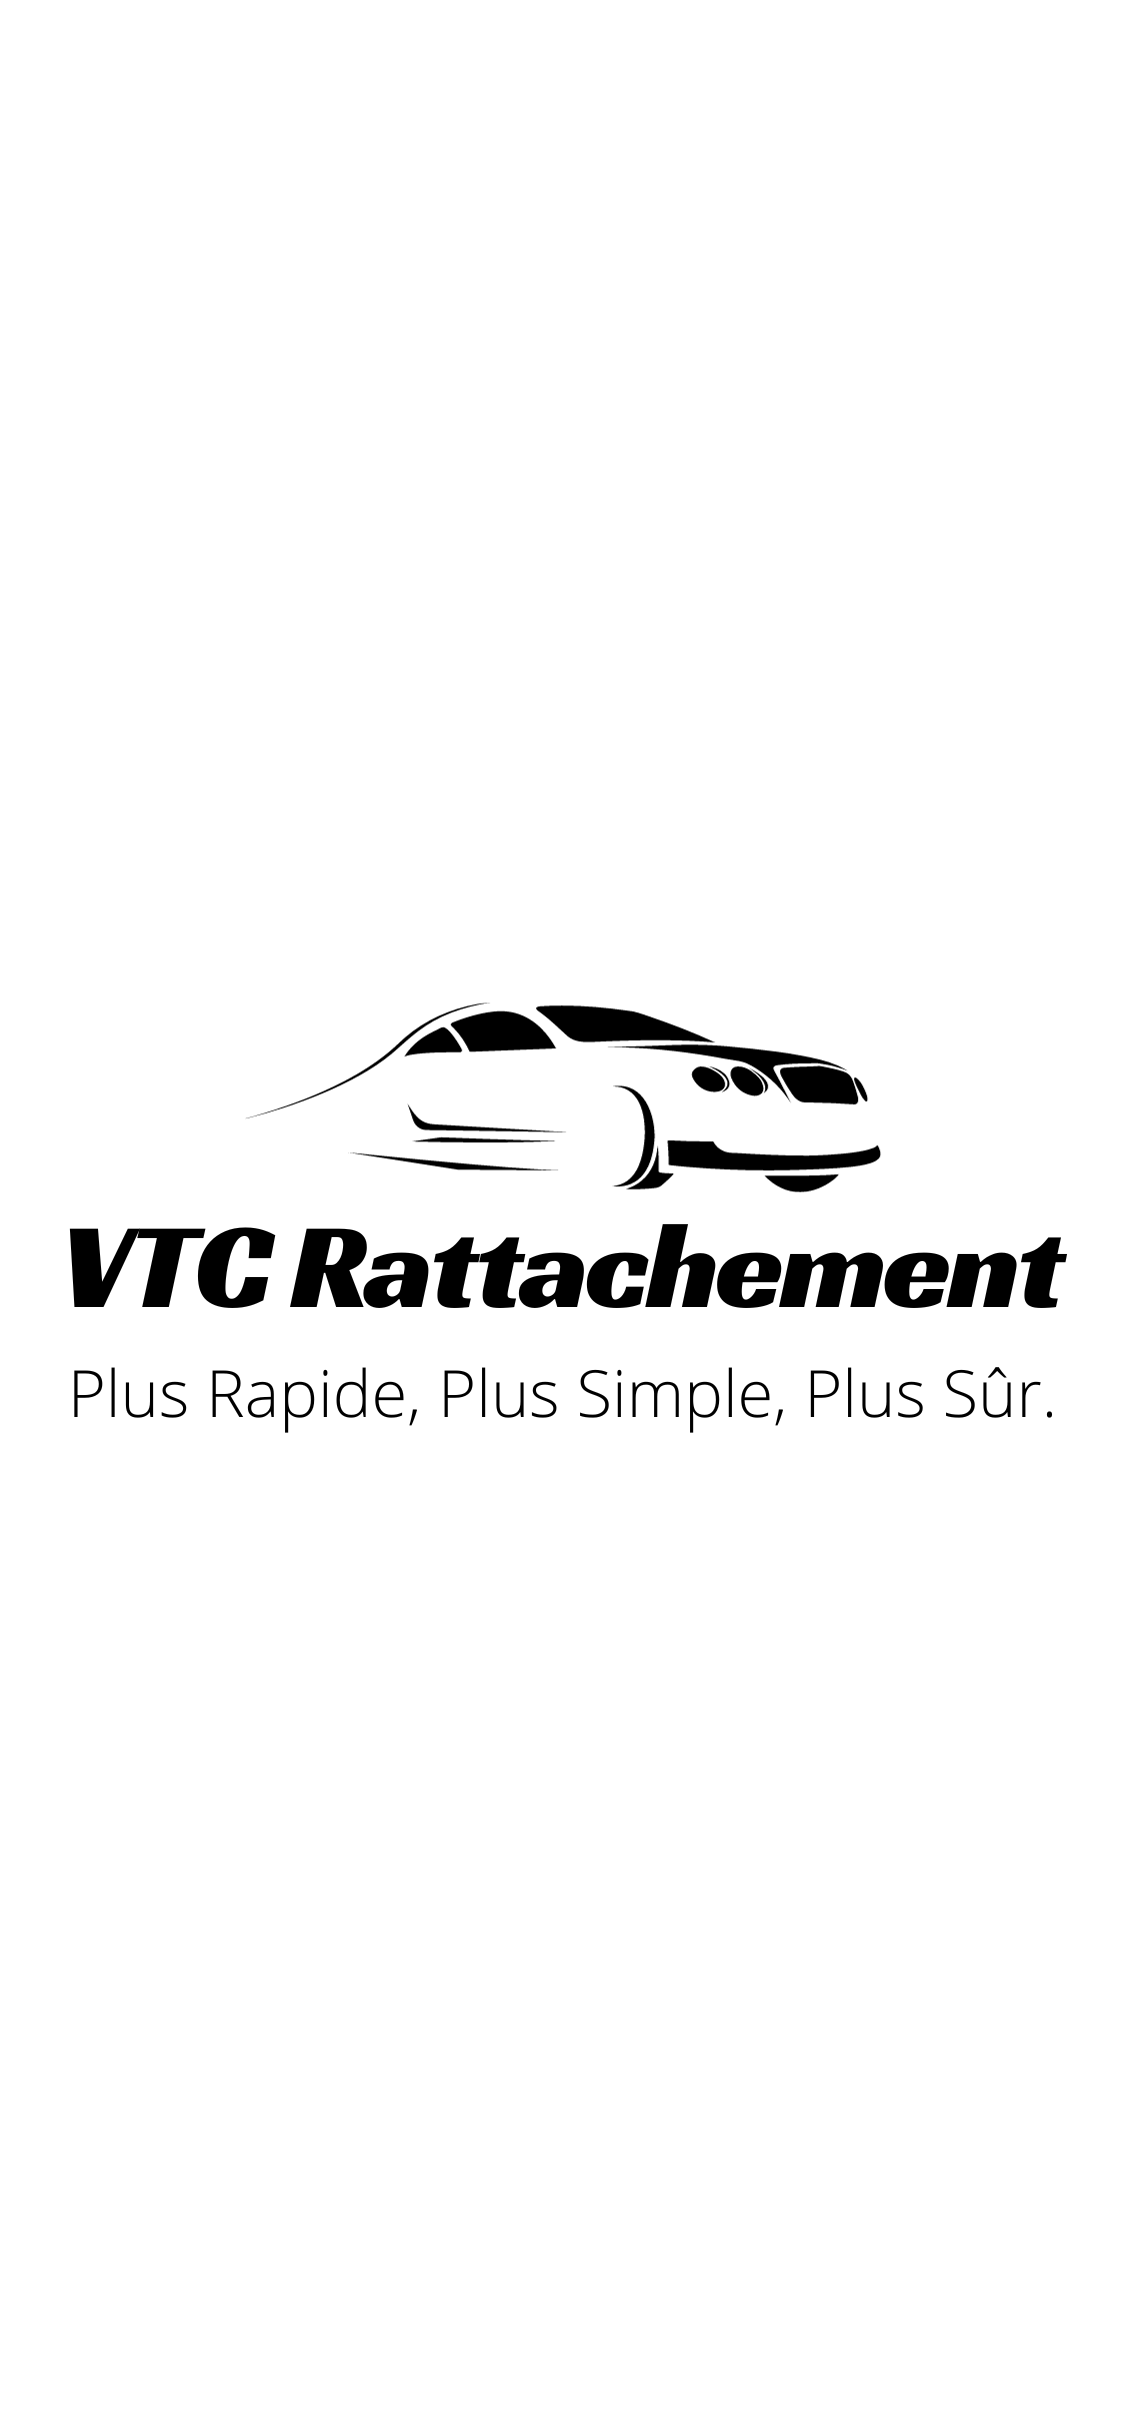 Le rattachement VTC : explication, avantages et prix - BVTC